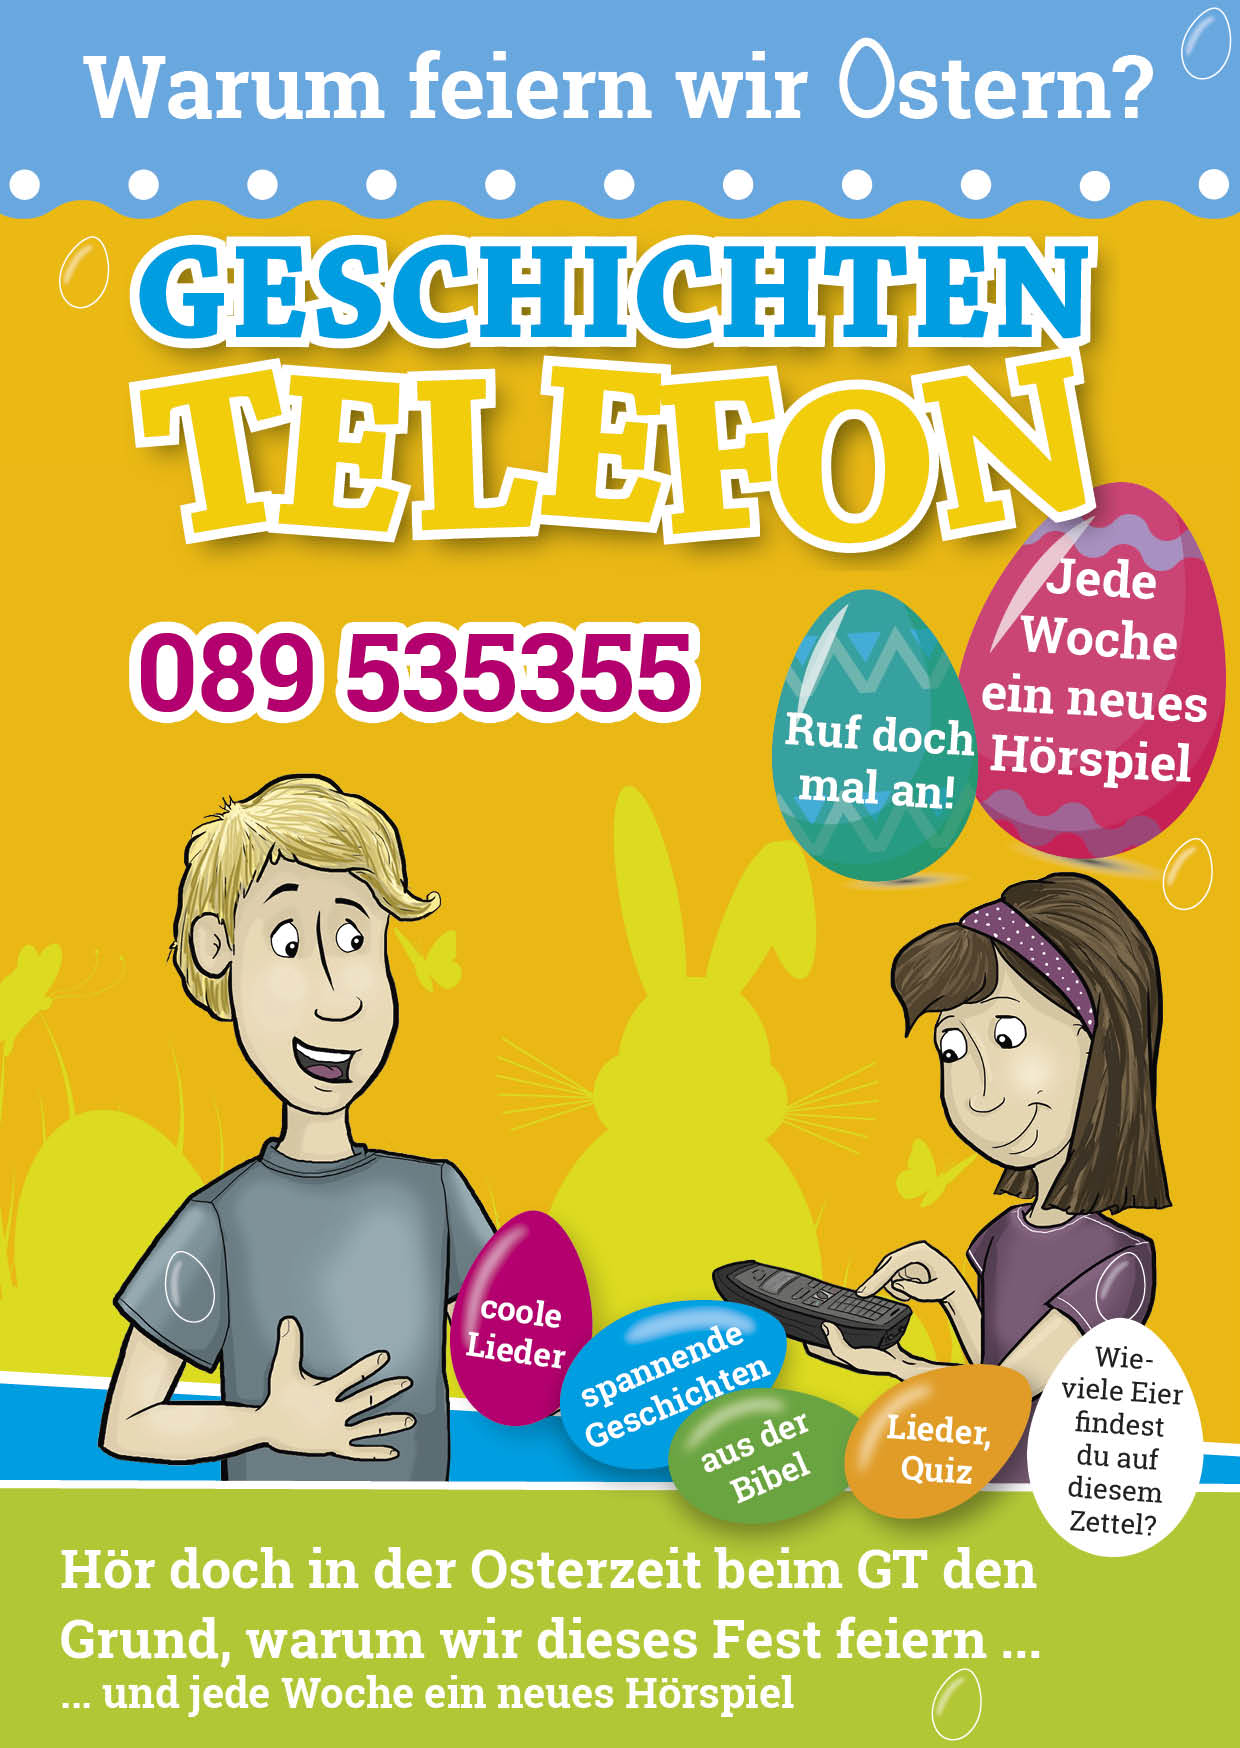 Geschichten-Telefon Werbezettel Oster-Edition